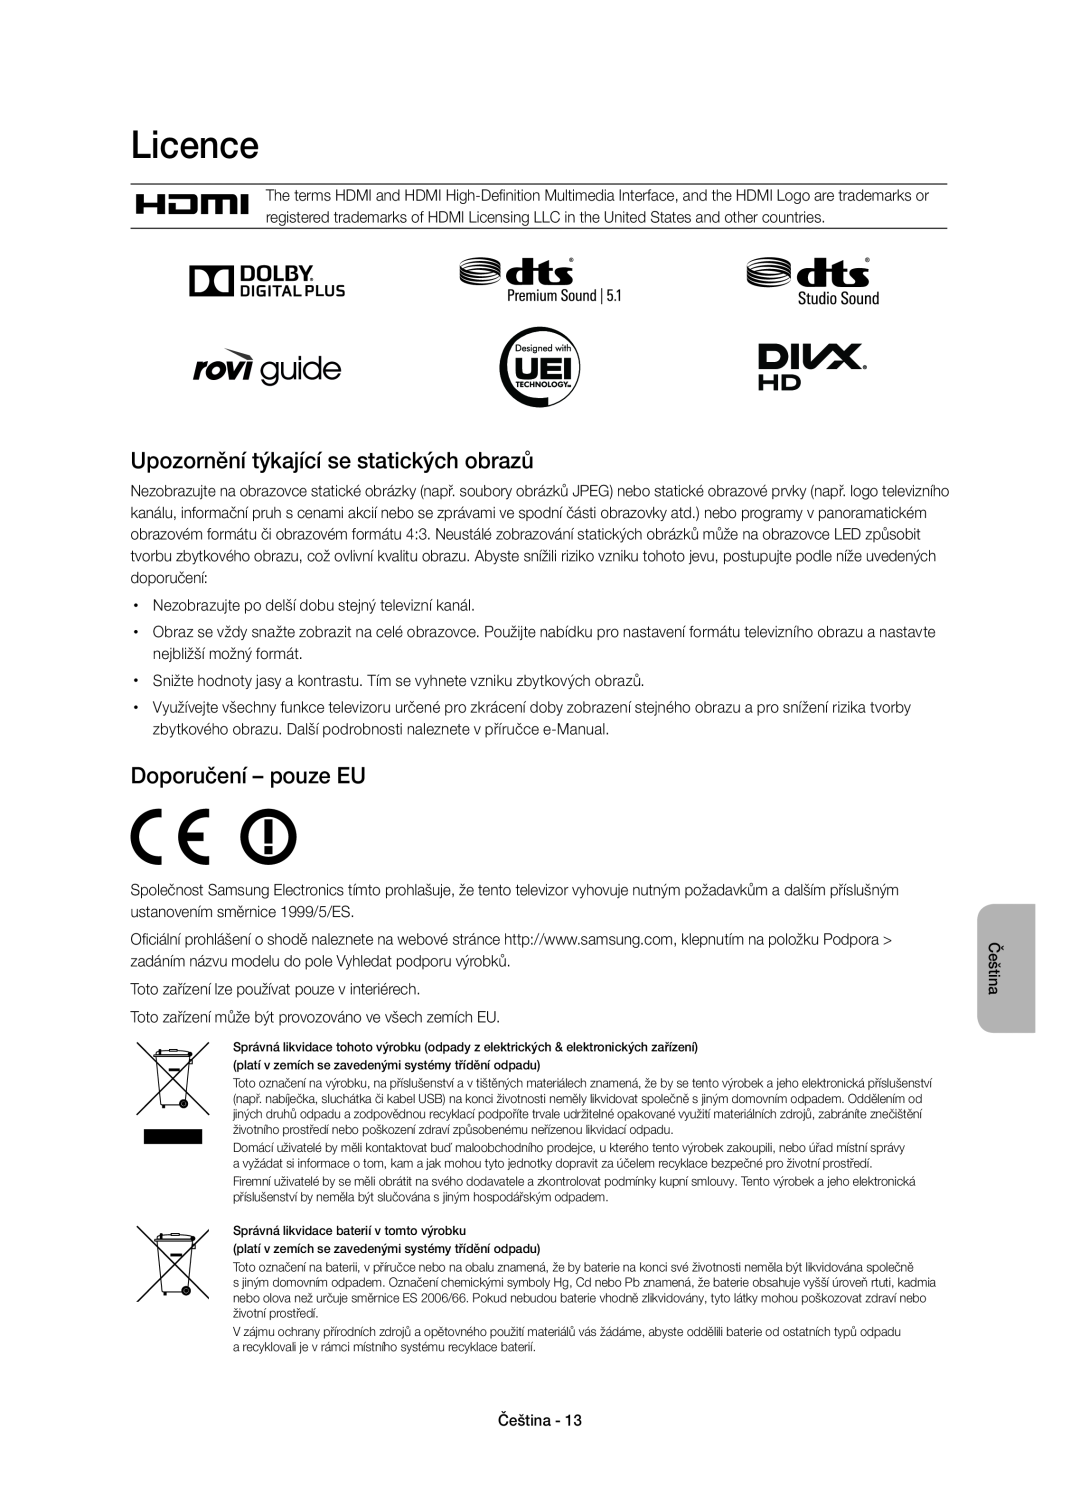 Samsung UE48H6410SSXZG, UE55H6410SSXXH manual Upozornění týkající se statických obrazů, Doporučení - pouze EU, Licence 